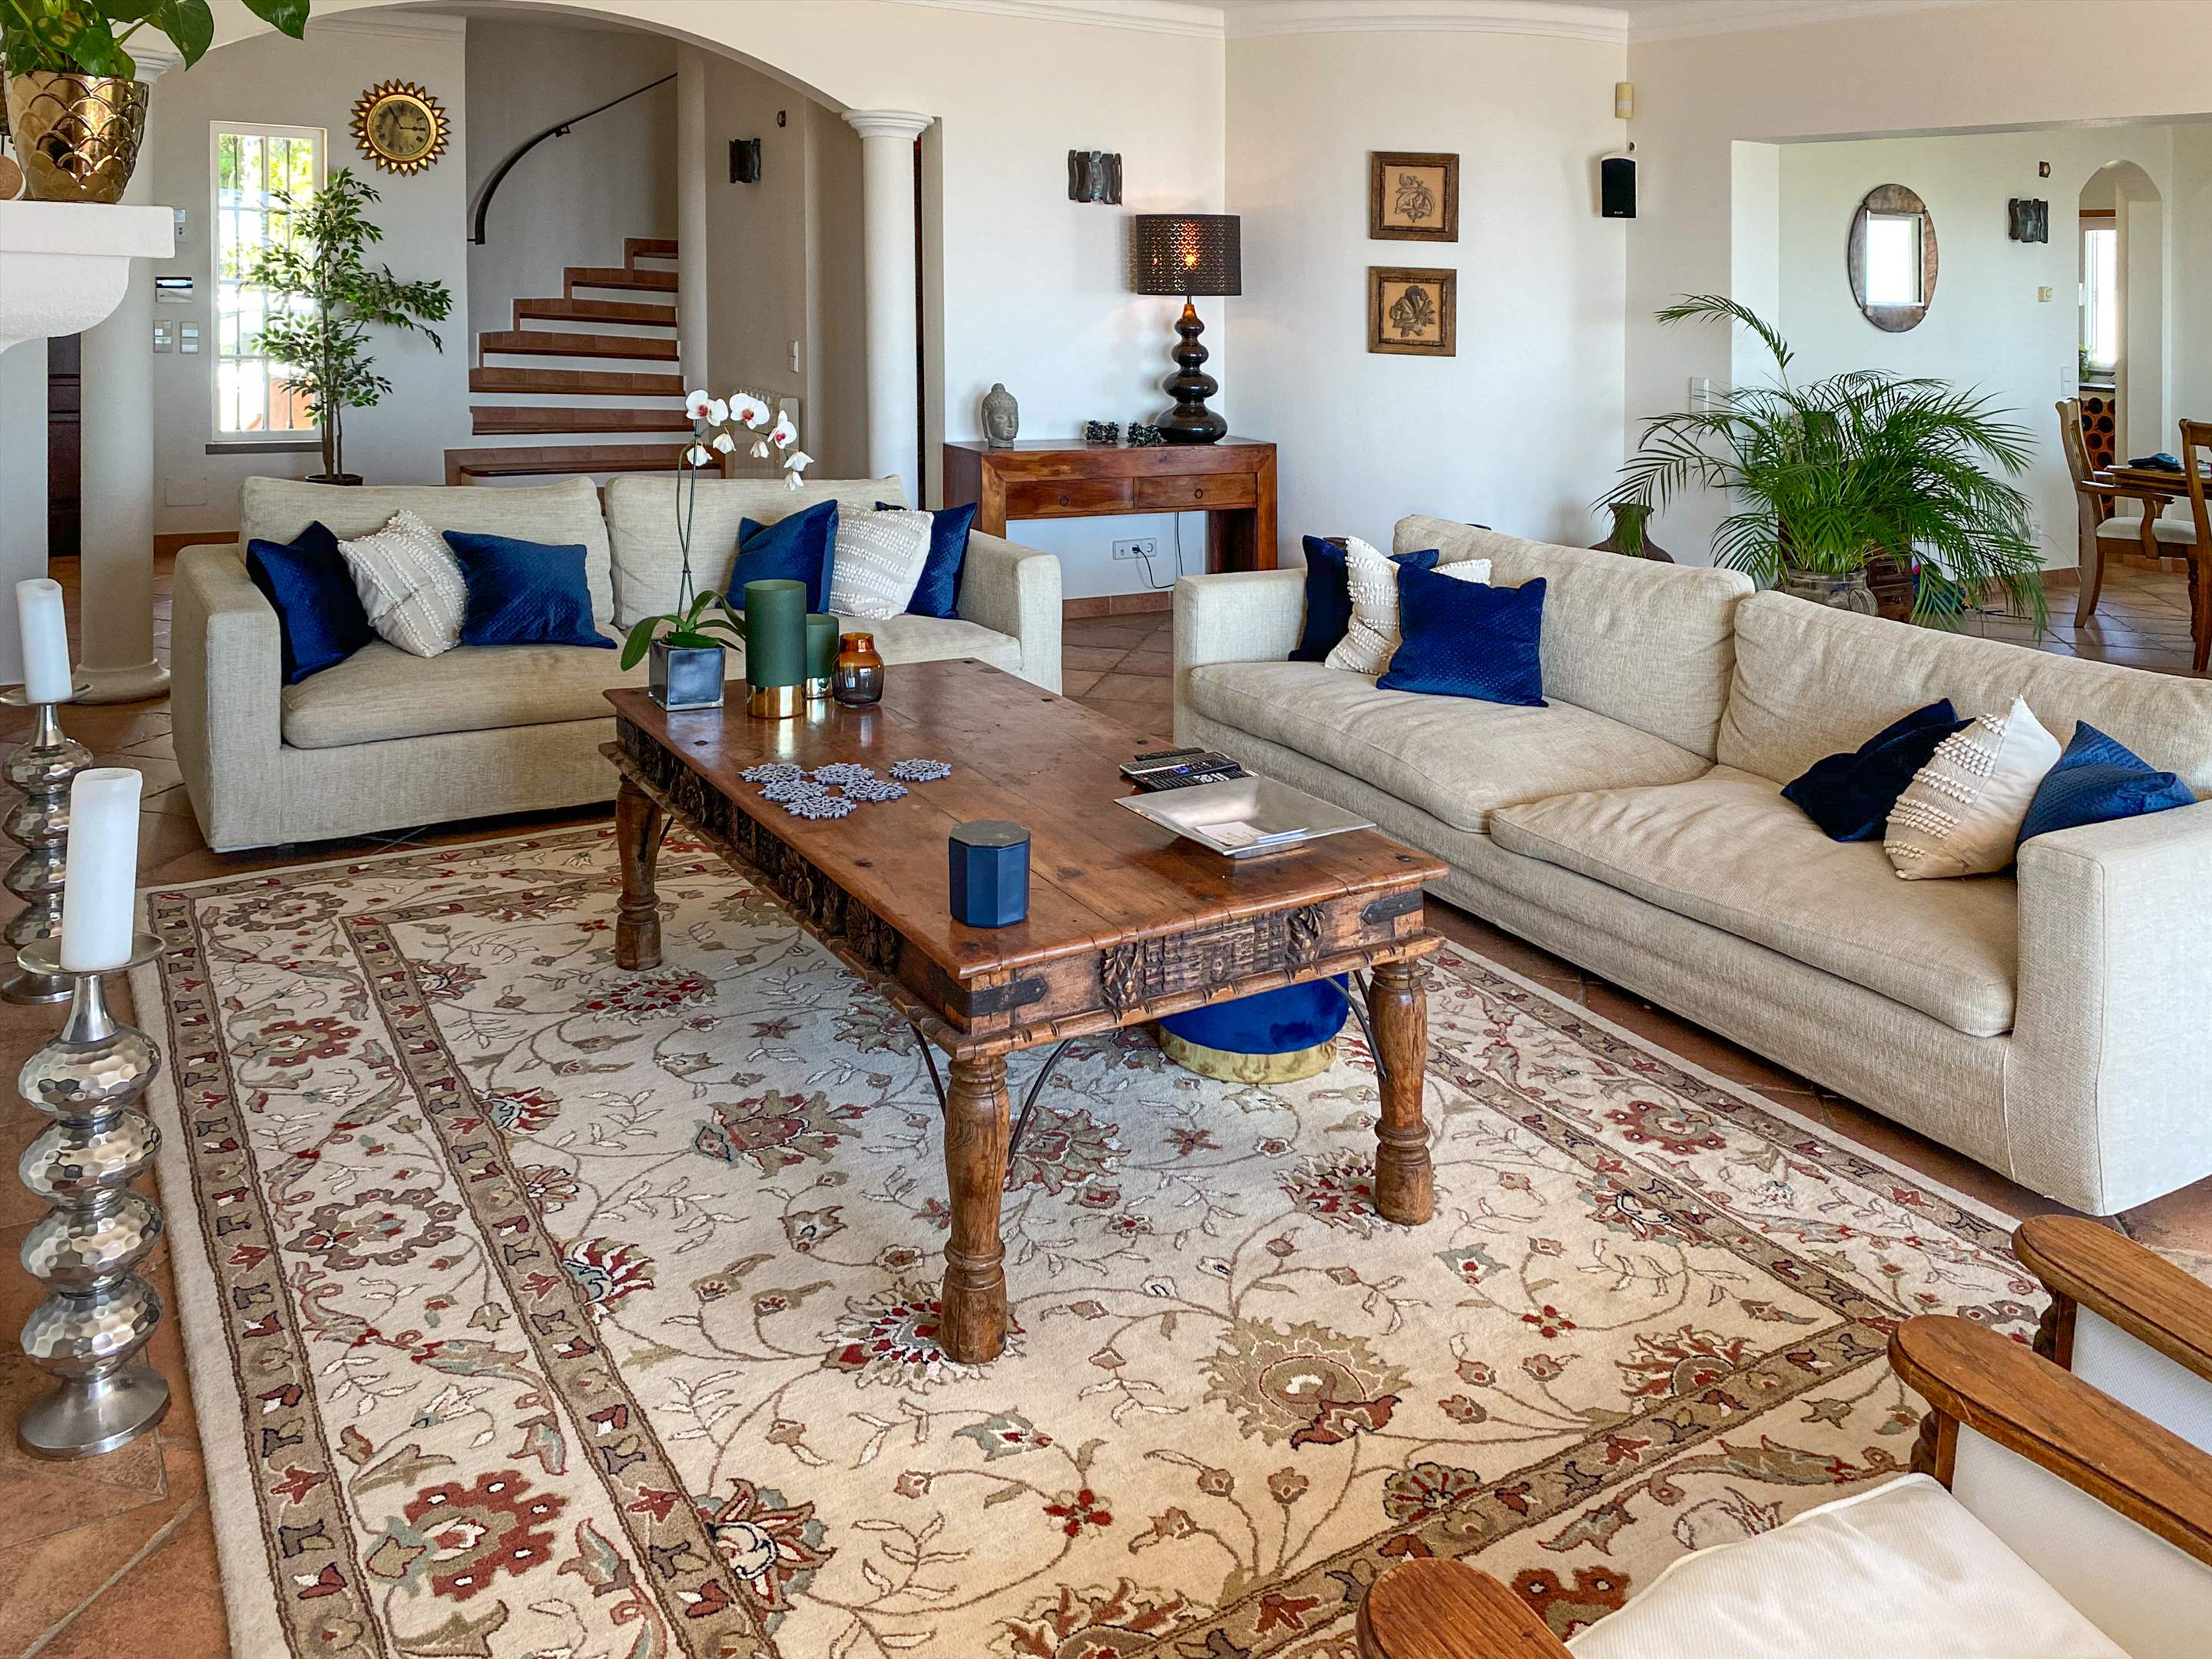 Villa Netuno, Five Bedroom Rate for 10 Persons, 5 bedroom villa in Algarve Countryside, Algarve Photo #13